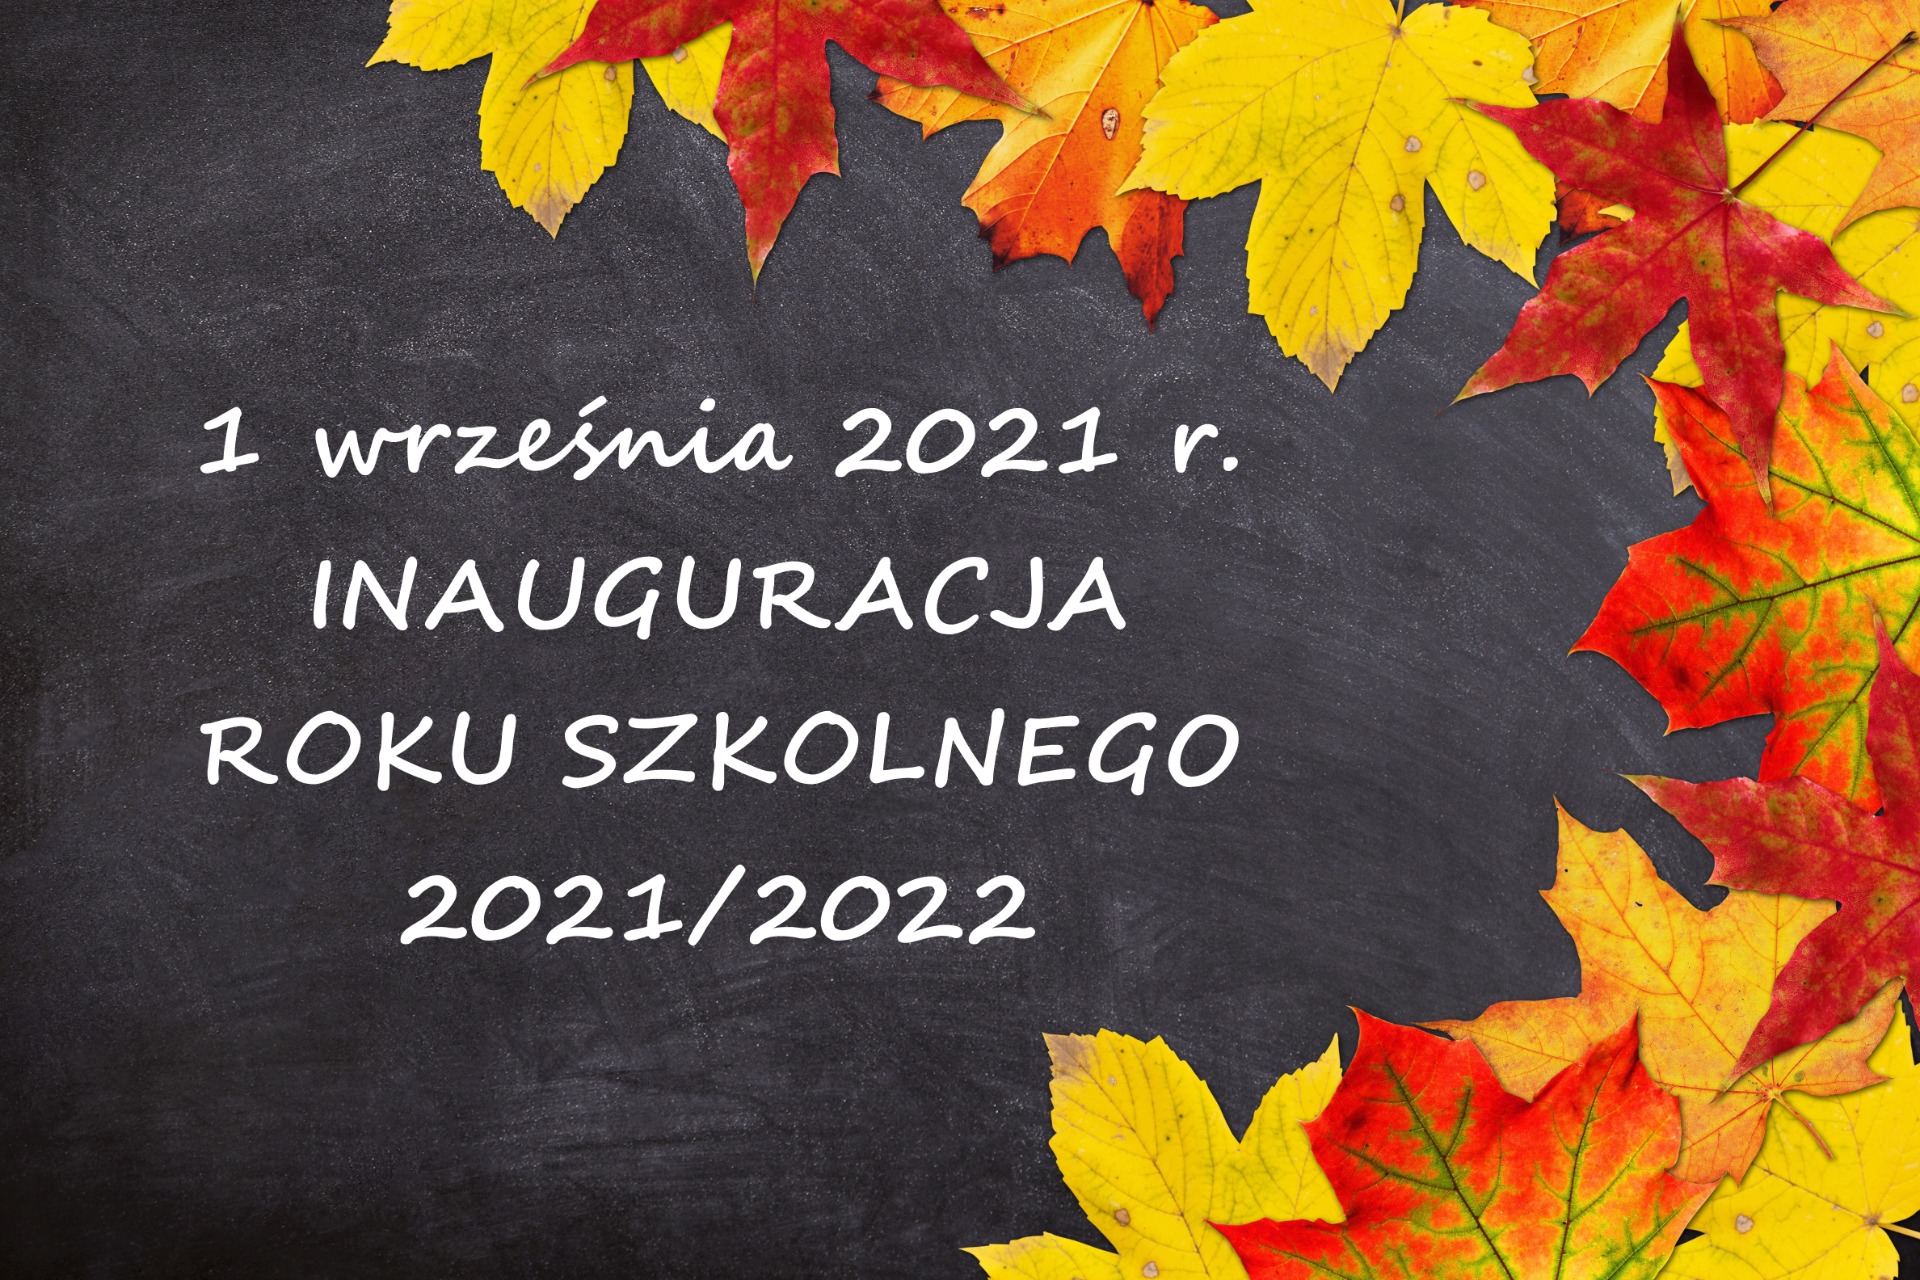 Inauguracja roku szkolnego 2021/2022 - Obrazek 1